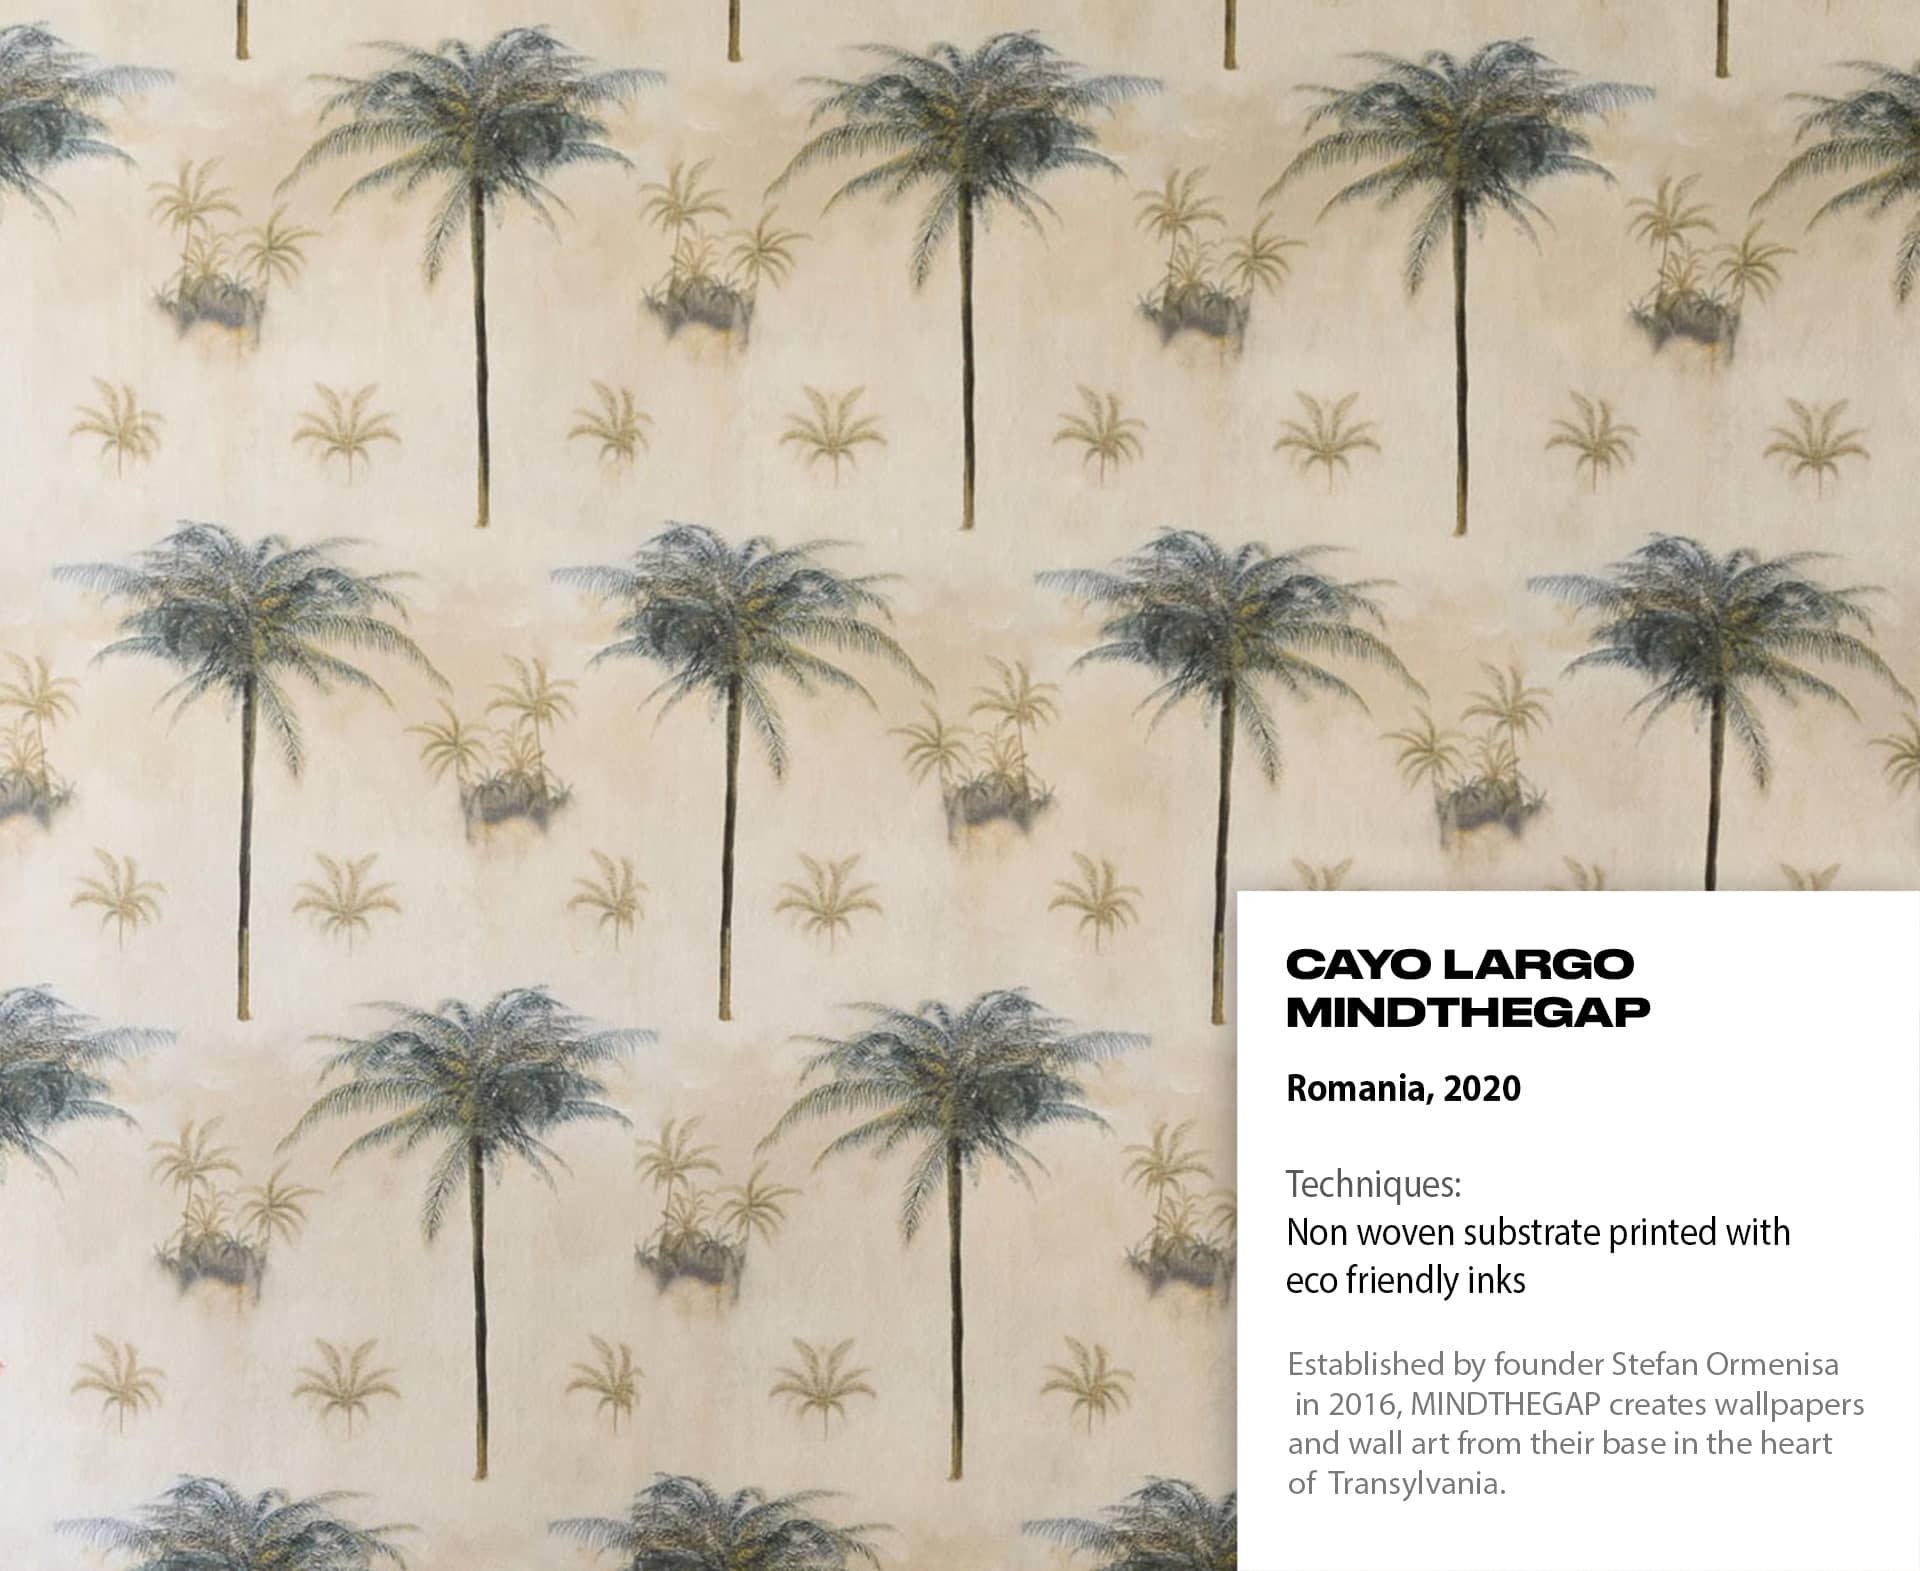 Cayo Largo Mindthegap, Romania, 2020. Palm tree print on color-washed, off-white background.